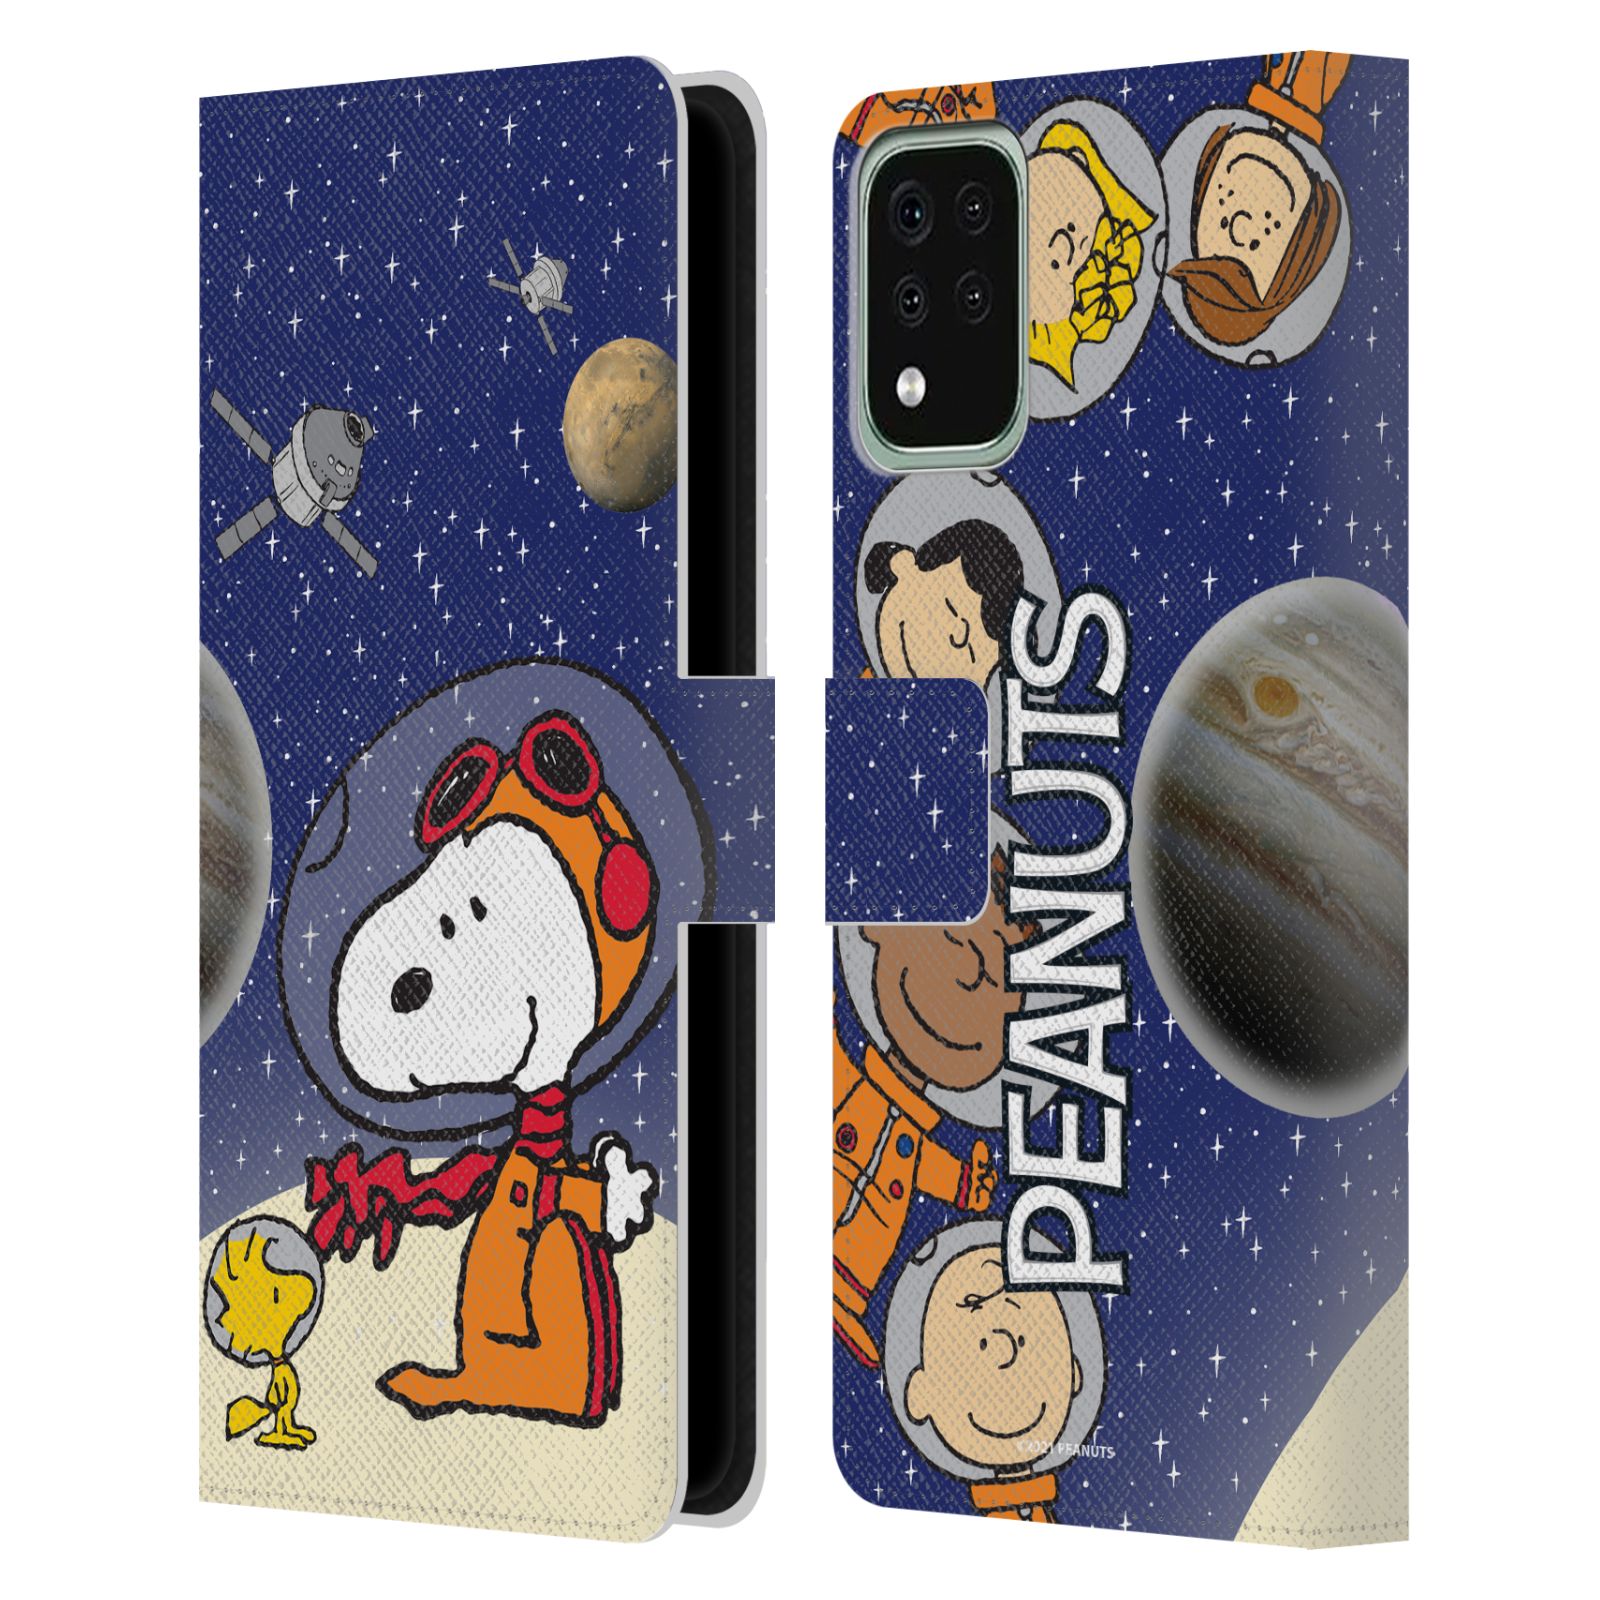 Pouzdro na mobil LG K42 / K52 / K62 - HEAD CASE - Peanuts Snoopy ve vesmíru 2